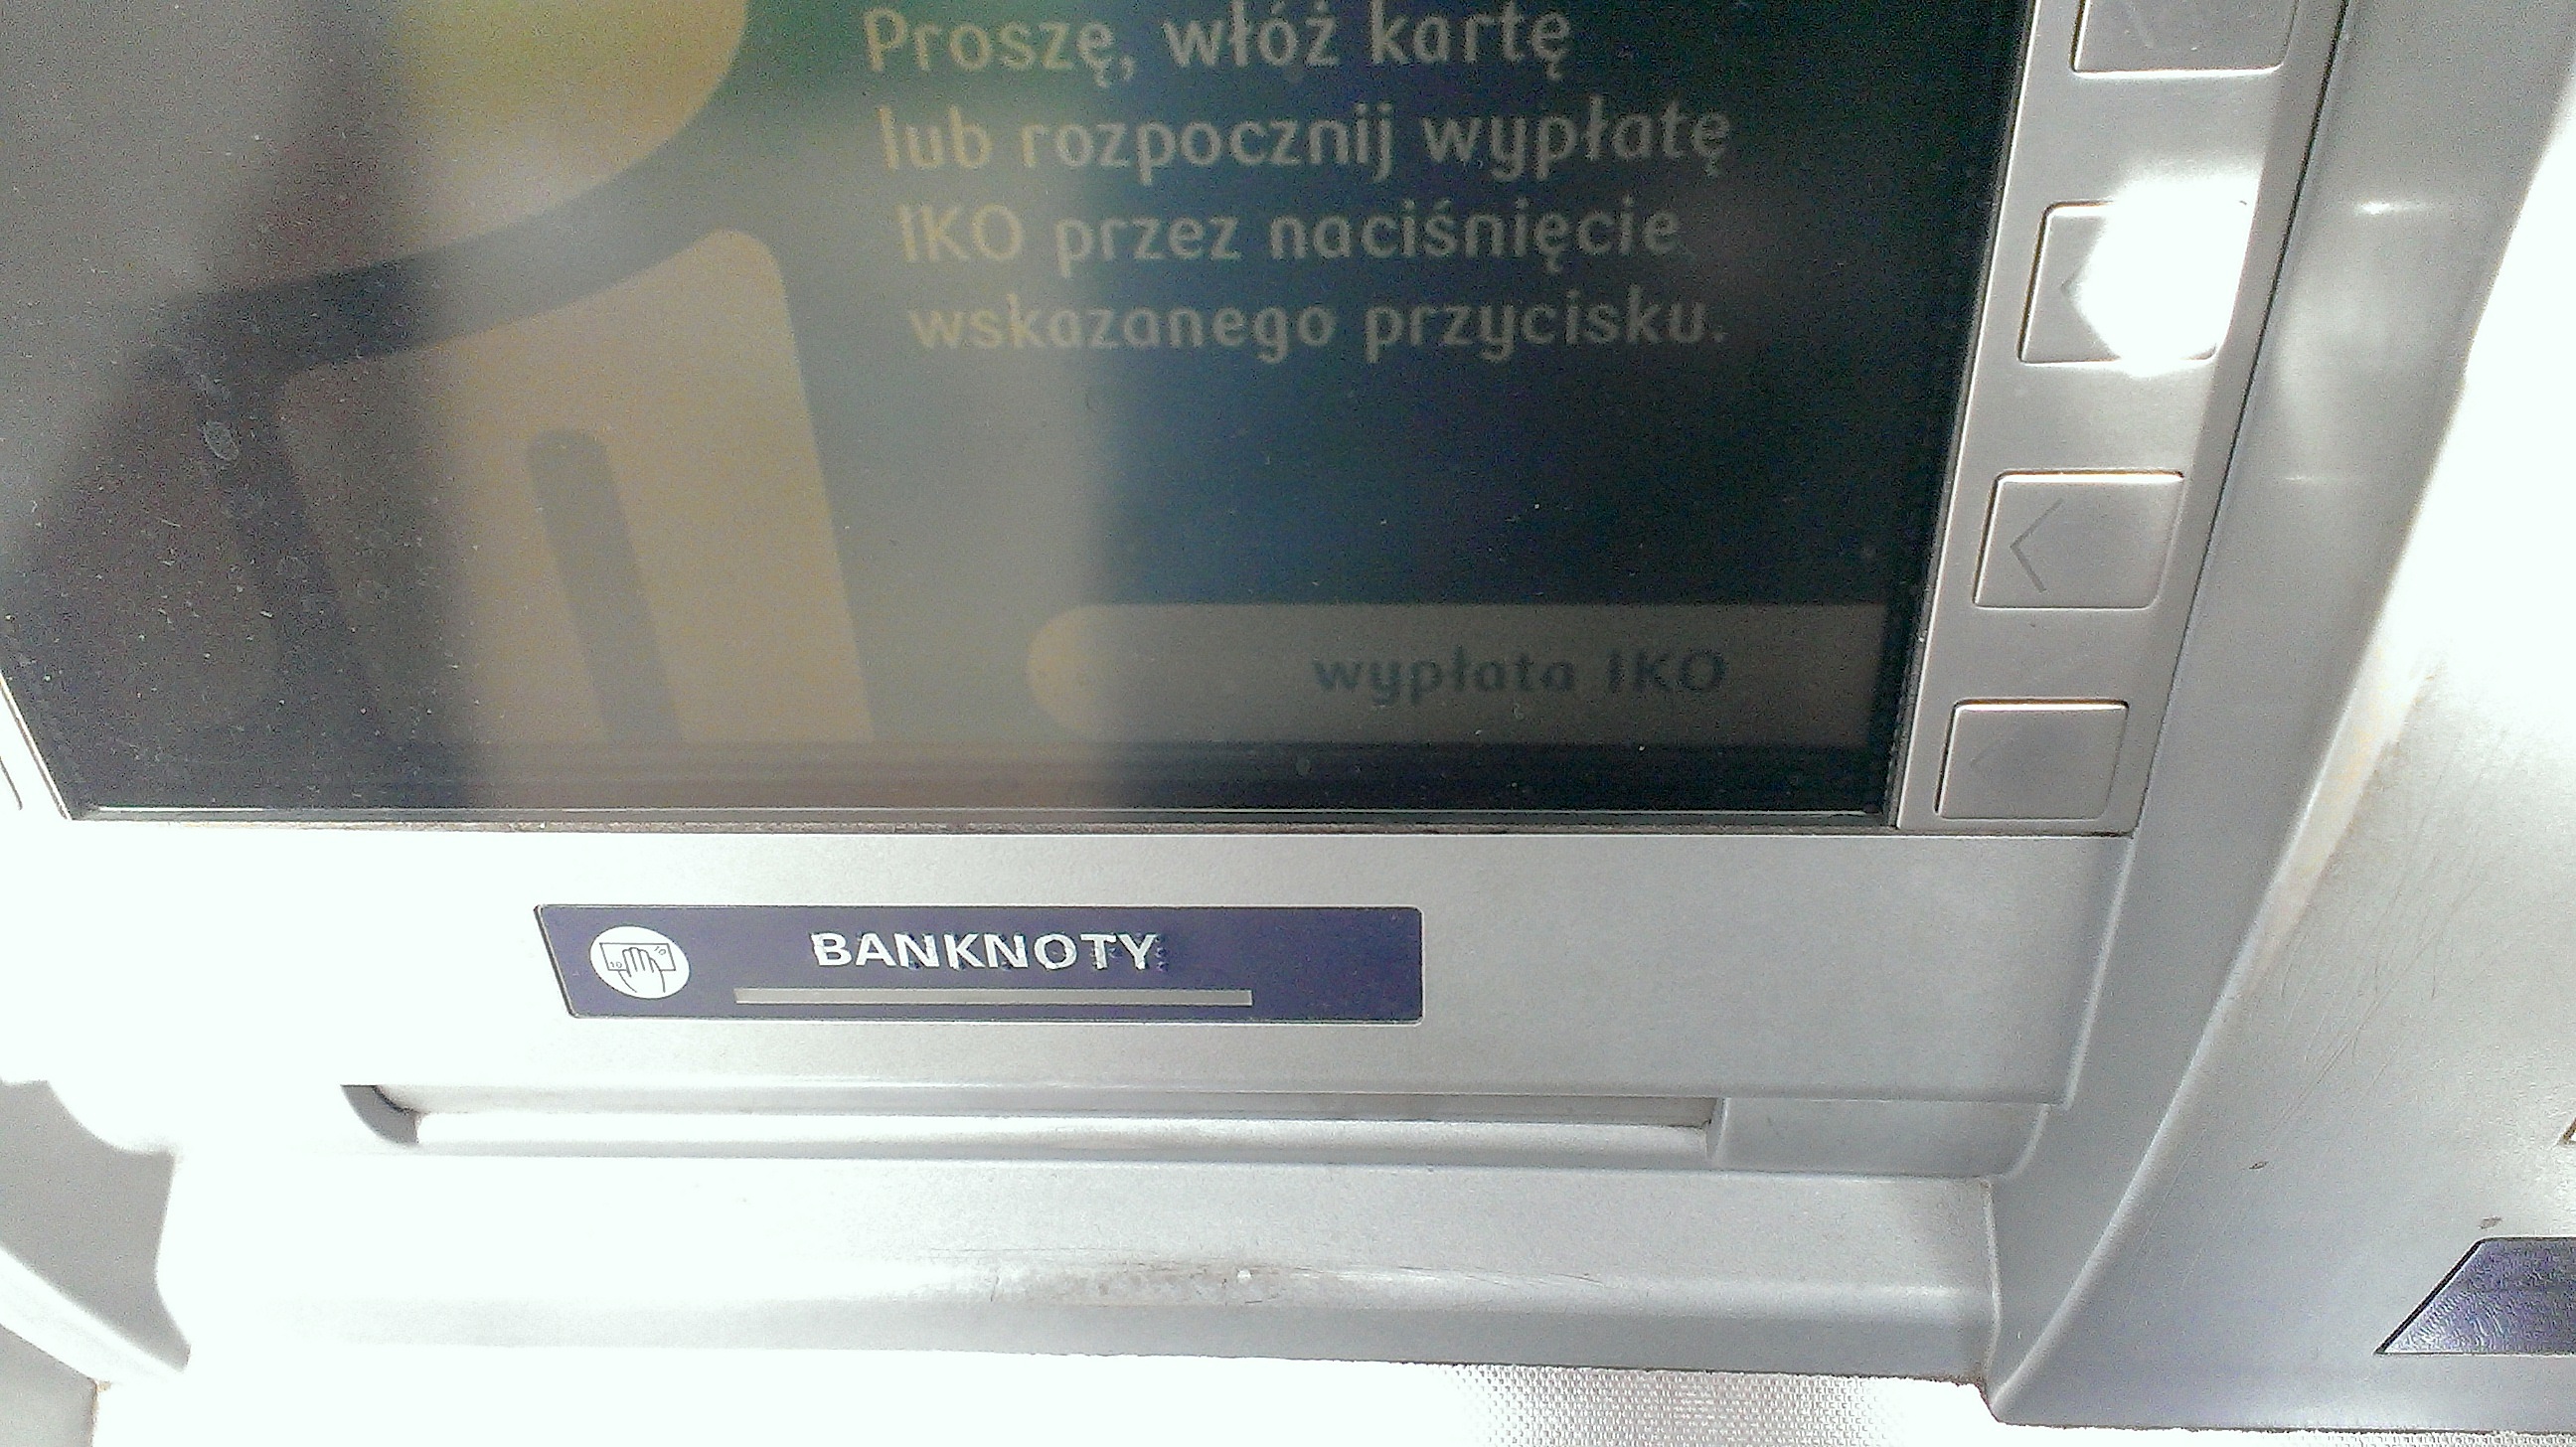 Getin Bank Wypłata Z Bankomatu Wypłata z bankomatu za pomocą kodu IKO – tutorial